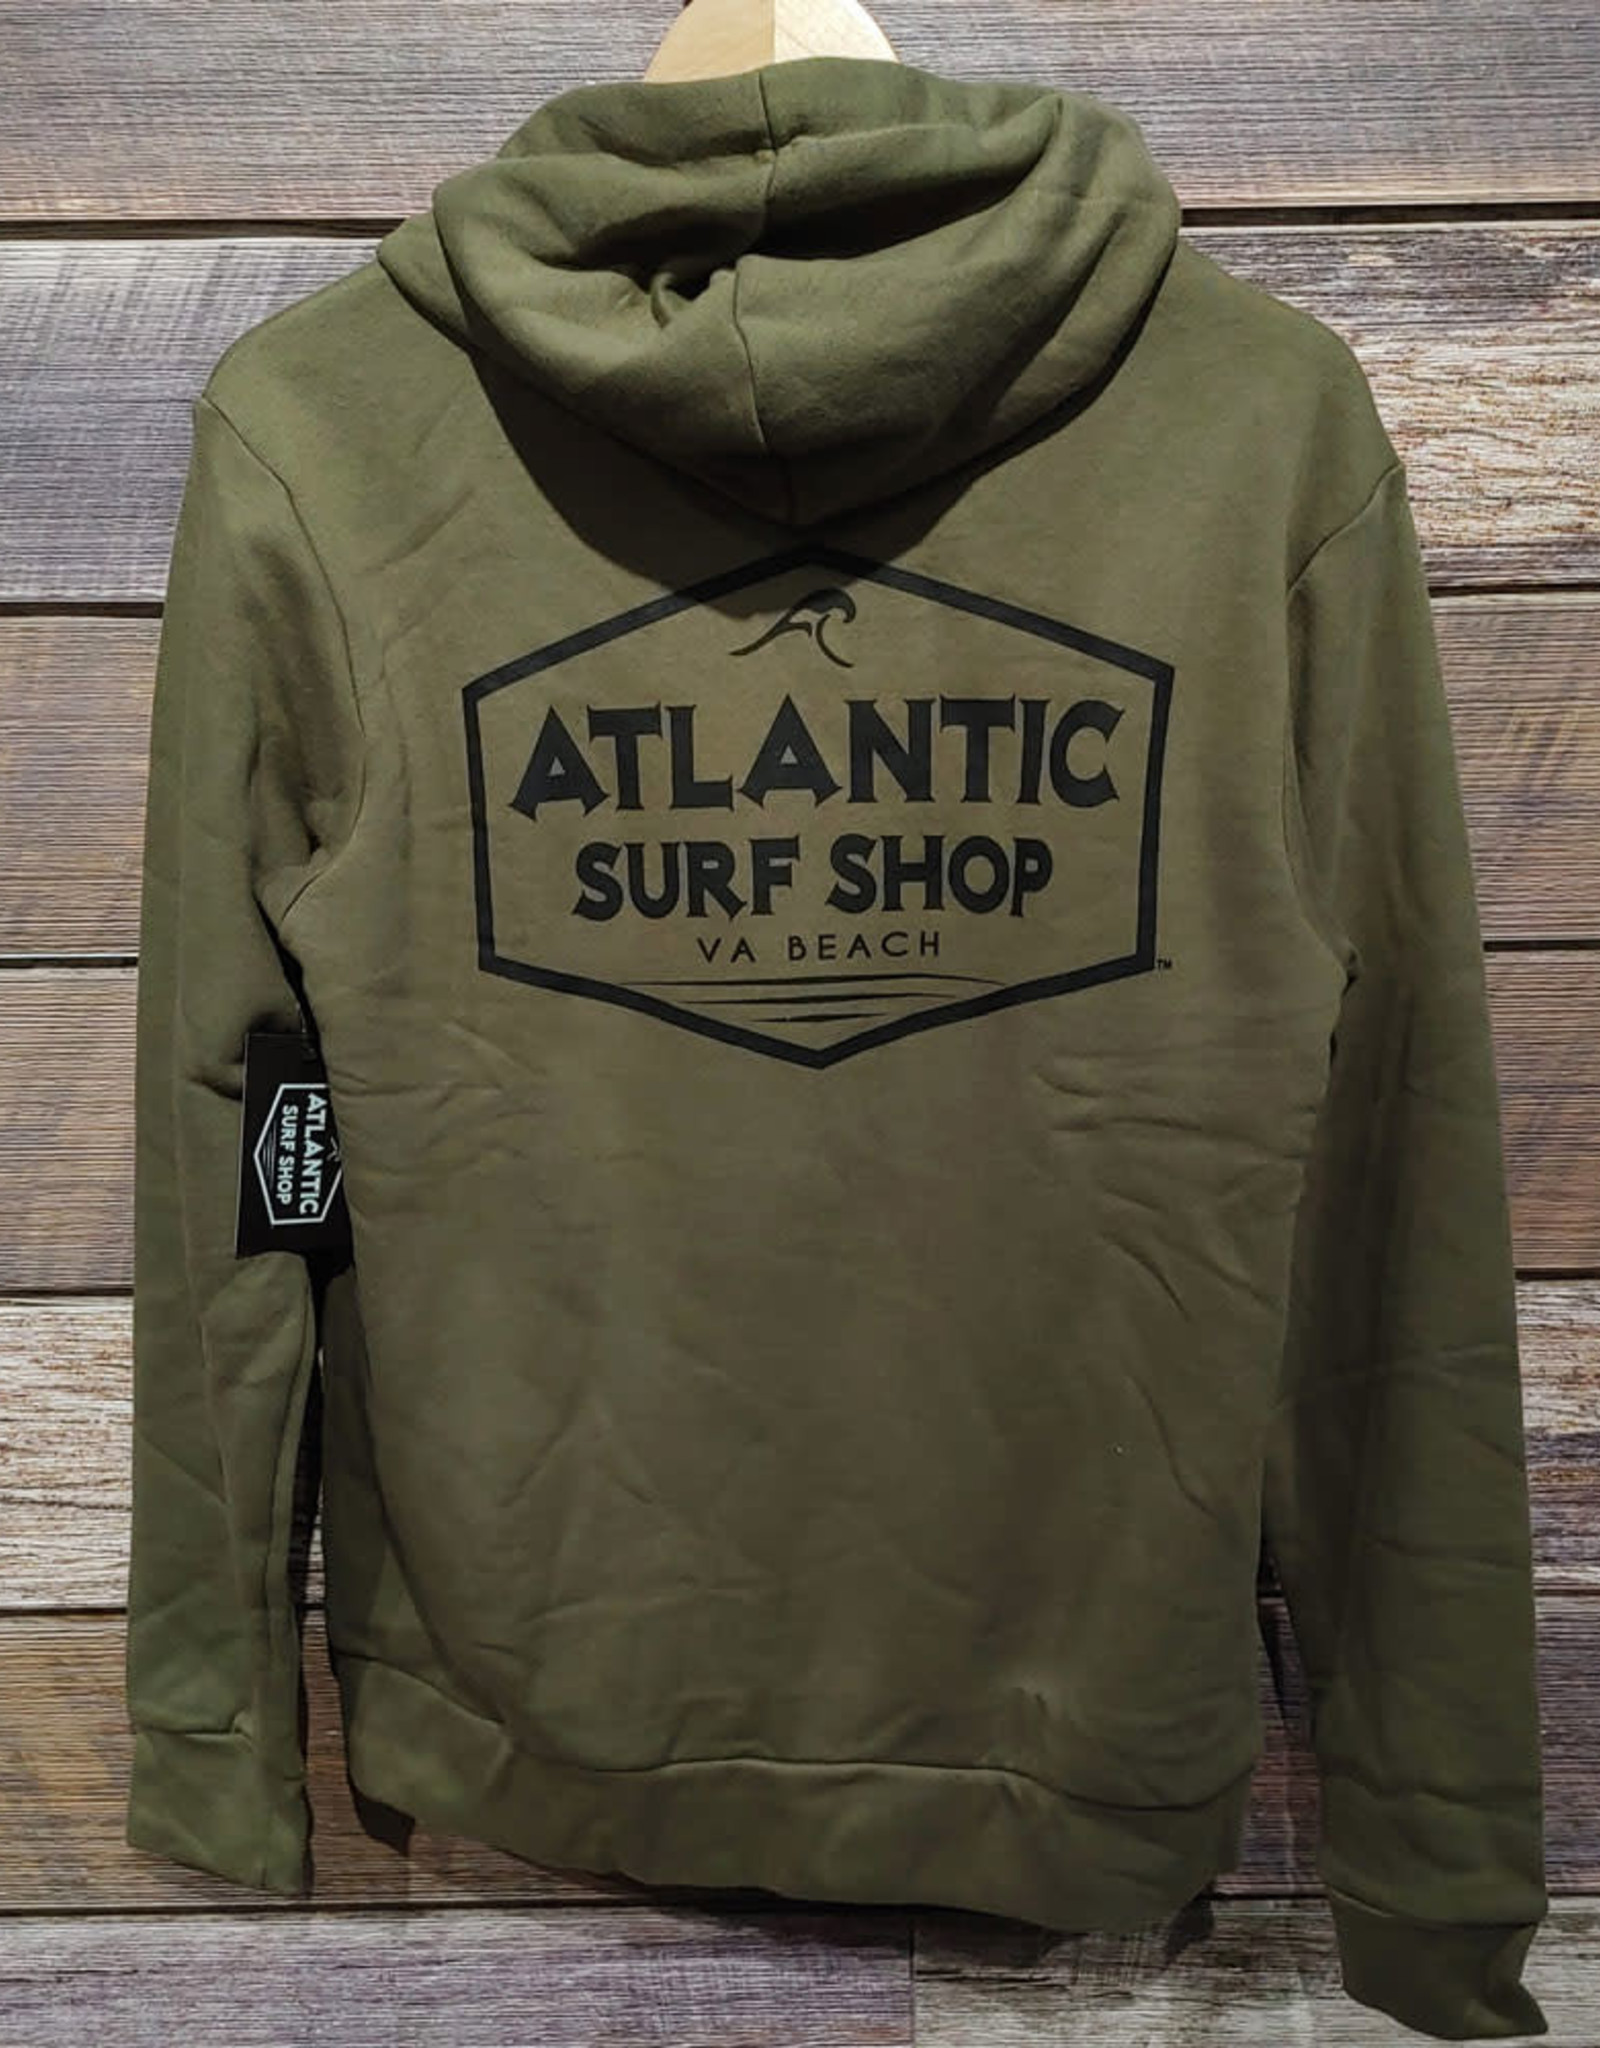 Atlantic Surf Co Atlantic Surf Shop Badge Vintage Hoodie